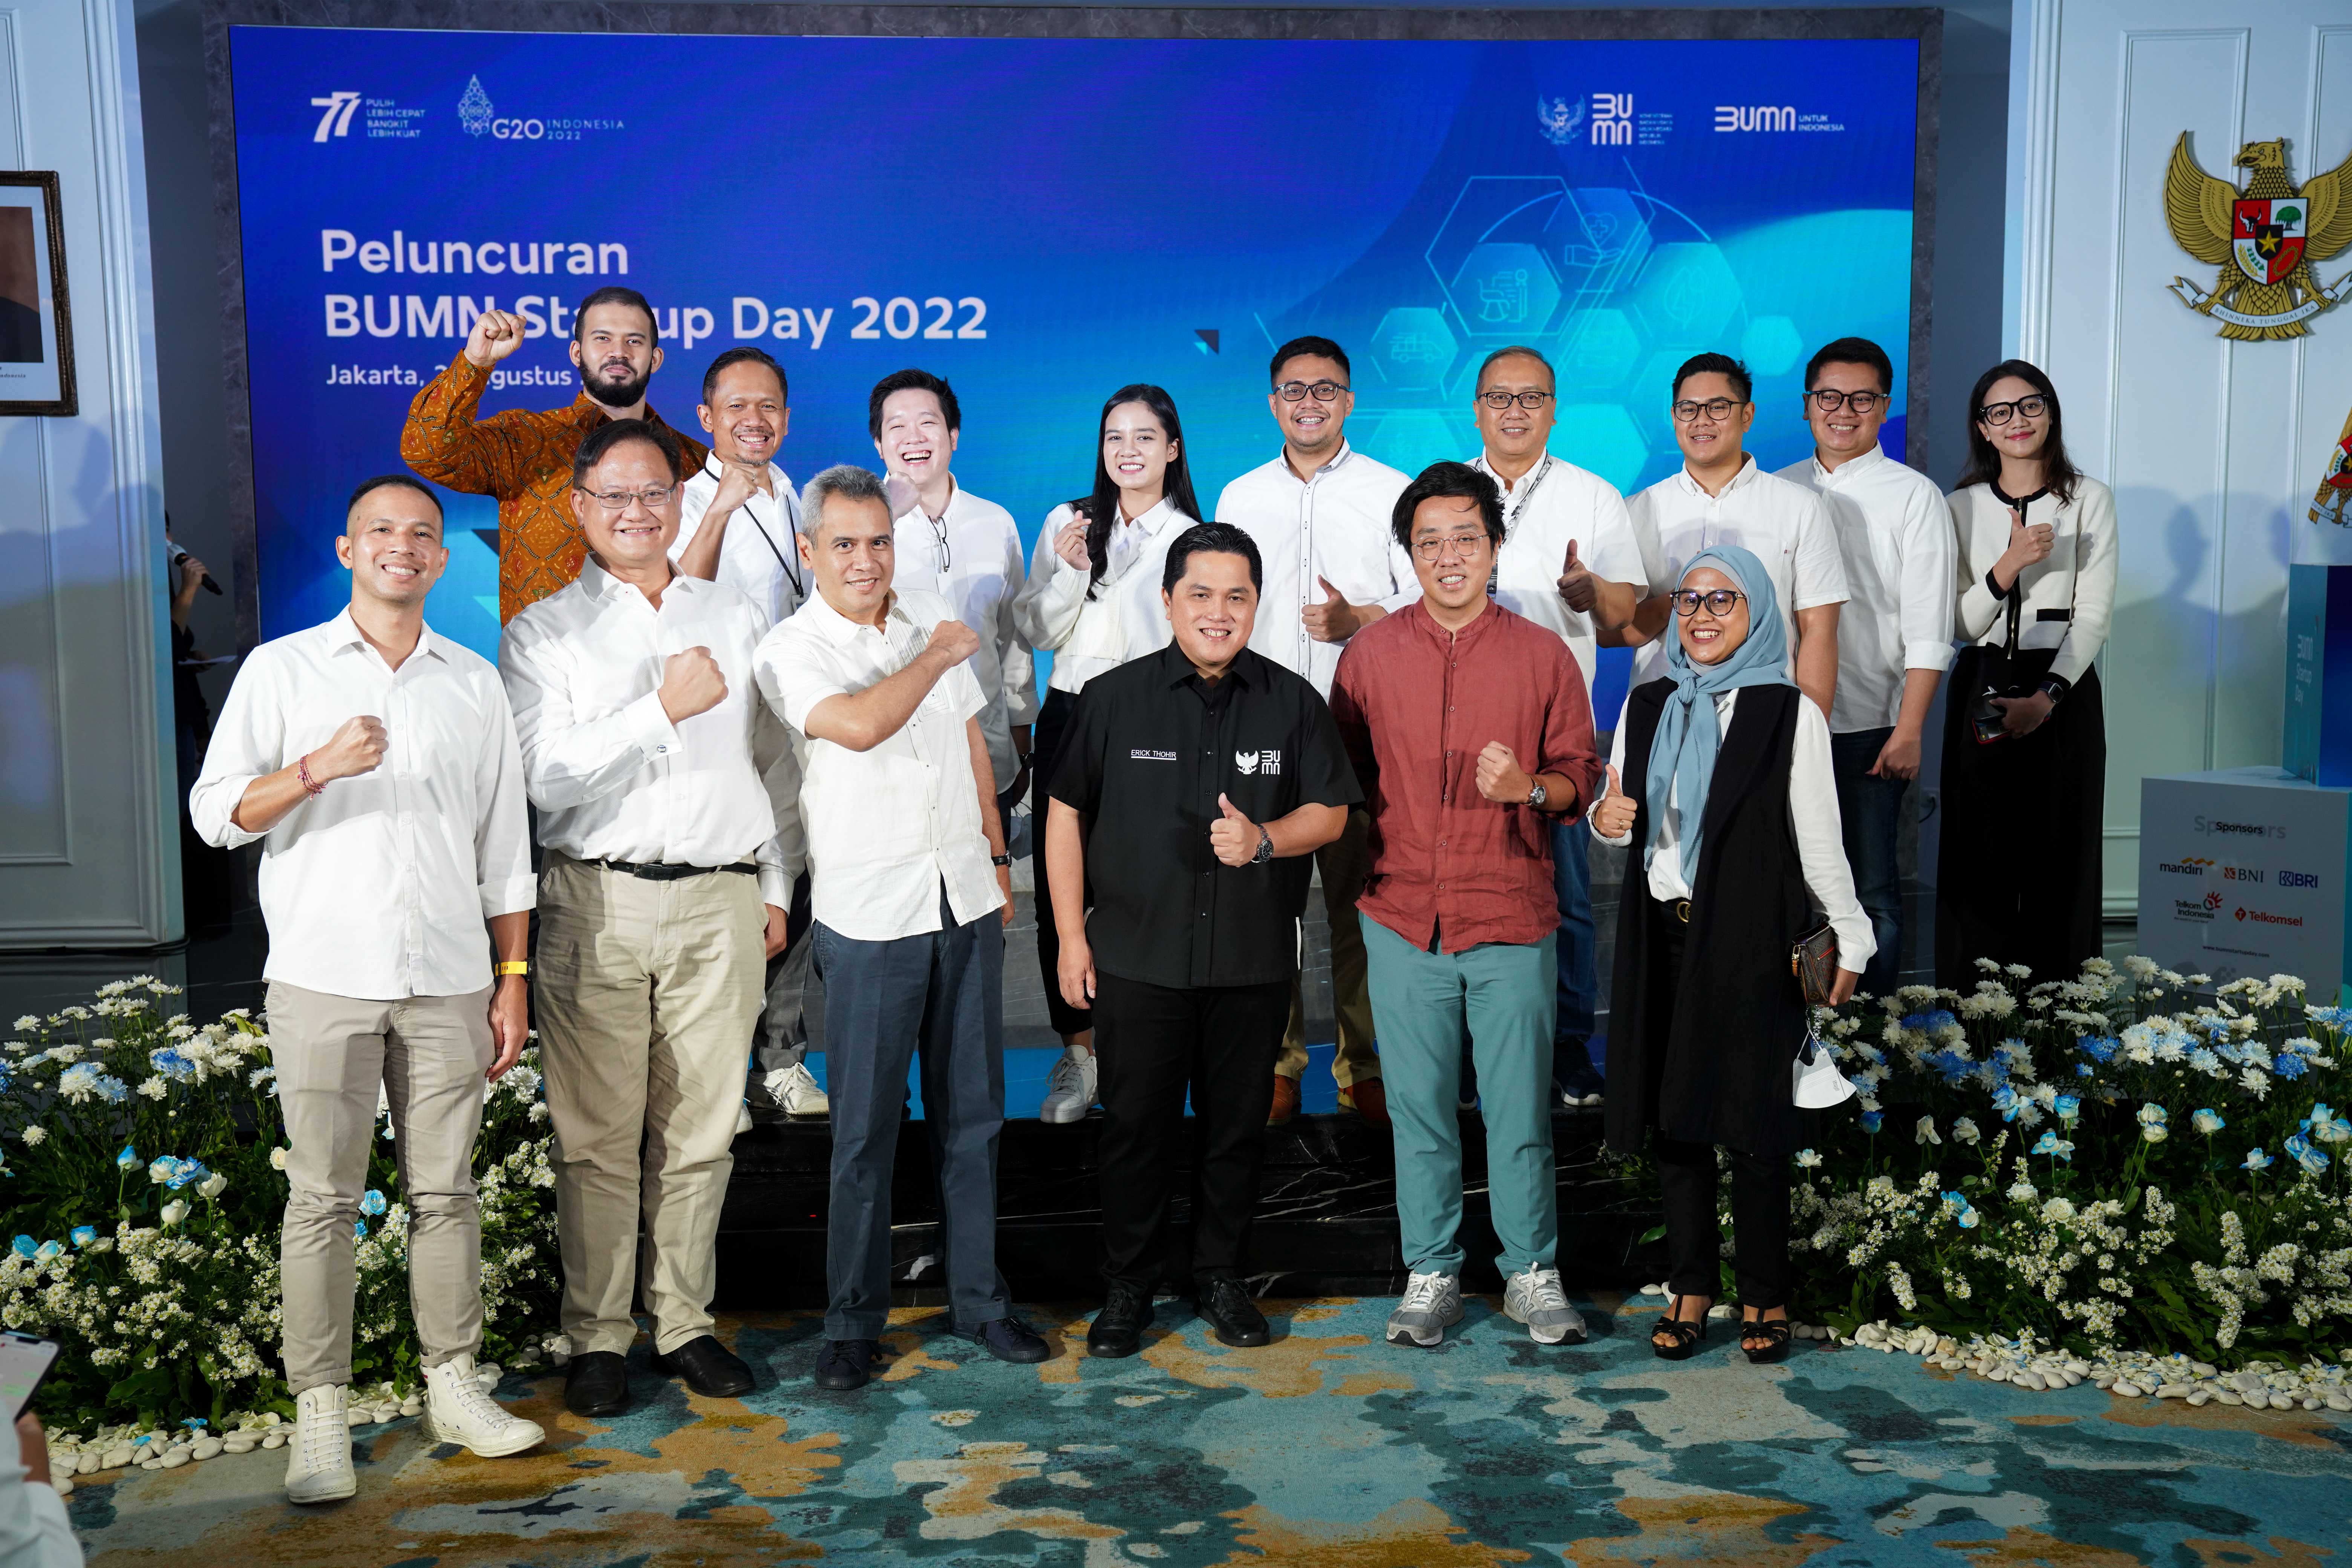 Menteri BUMN Erick Thohir melakukan Peluncuran BUMN Startup Day 2022 yang berlangsung di Gedung Kementerian BUMN